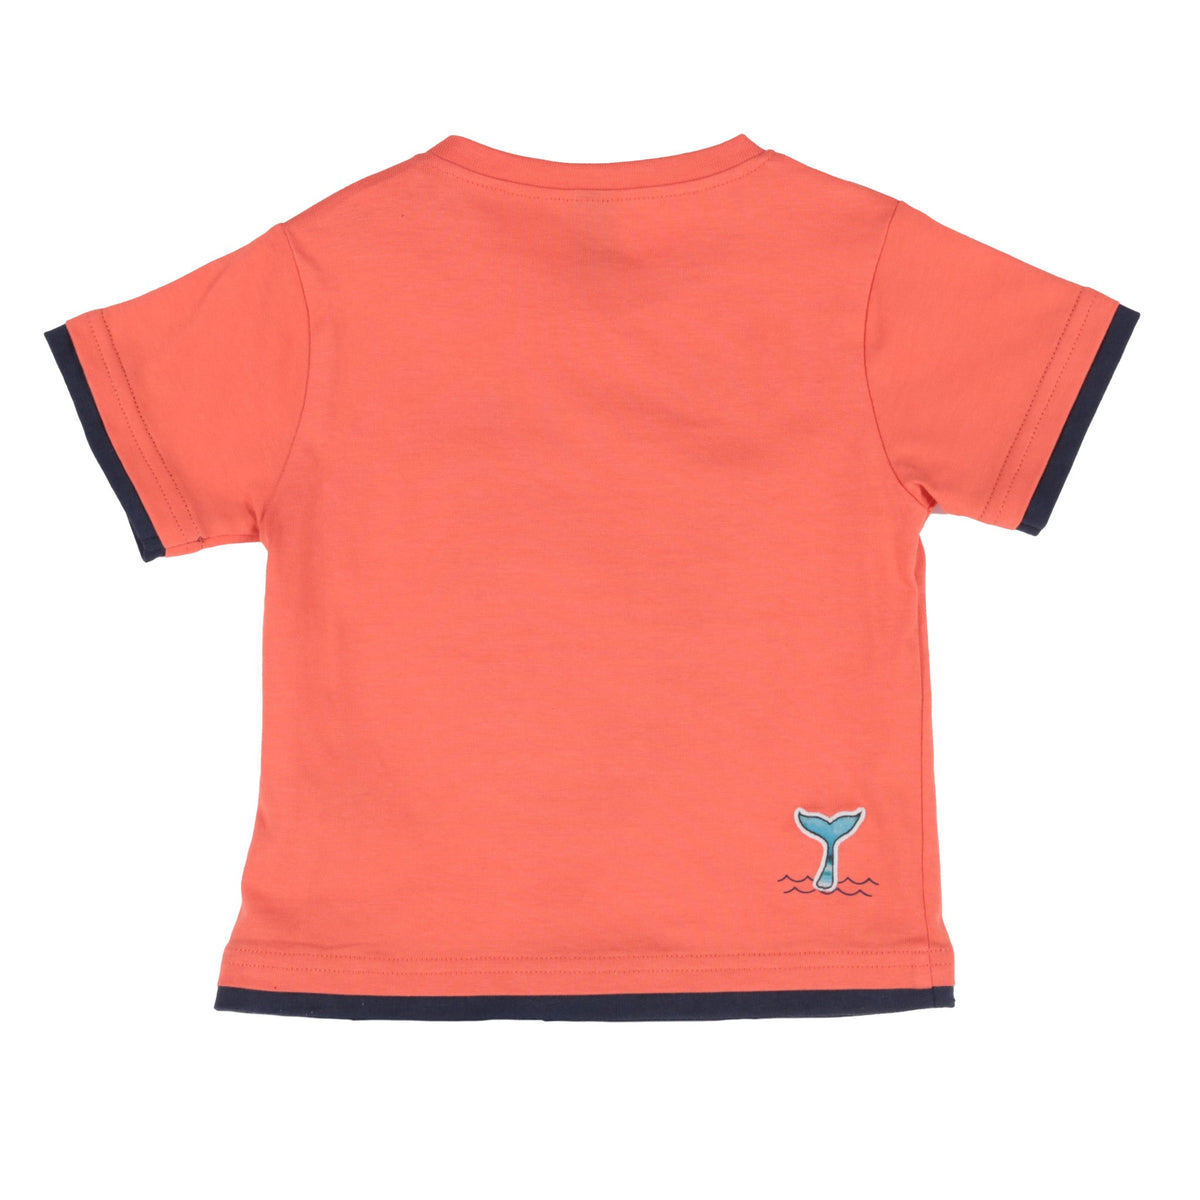 Chandail manches courtes pour bébé garçon par Nanö | S2251-02 Orange | Boutique Flos, vêtements pour bébés et enfants